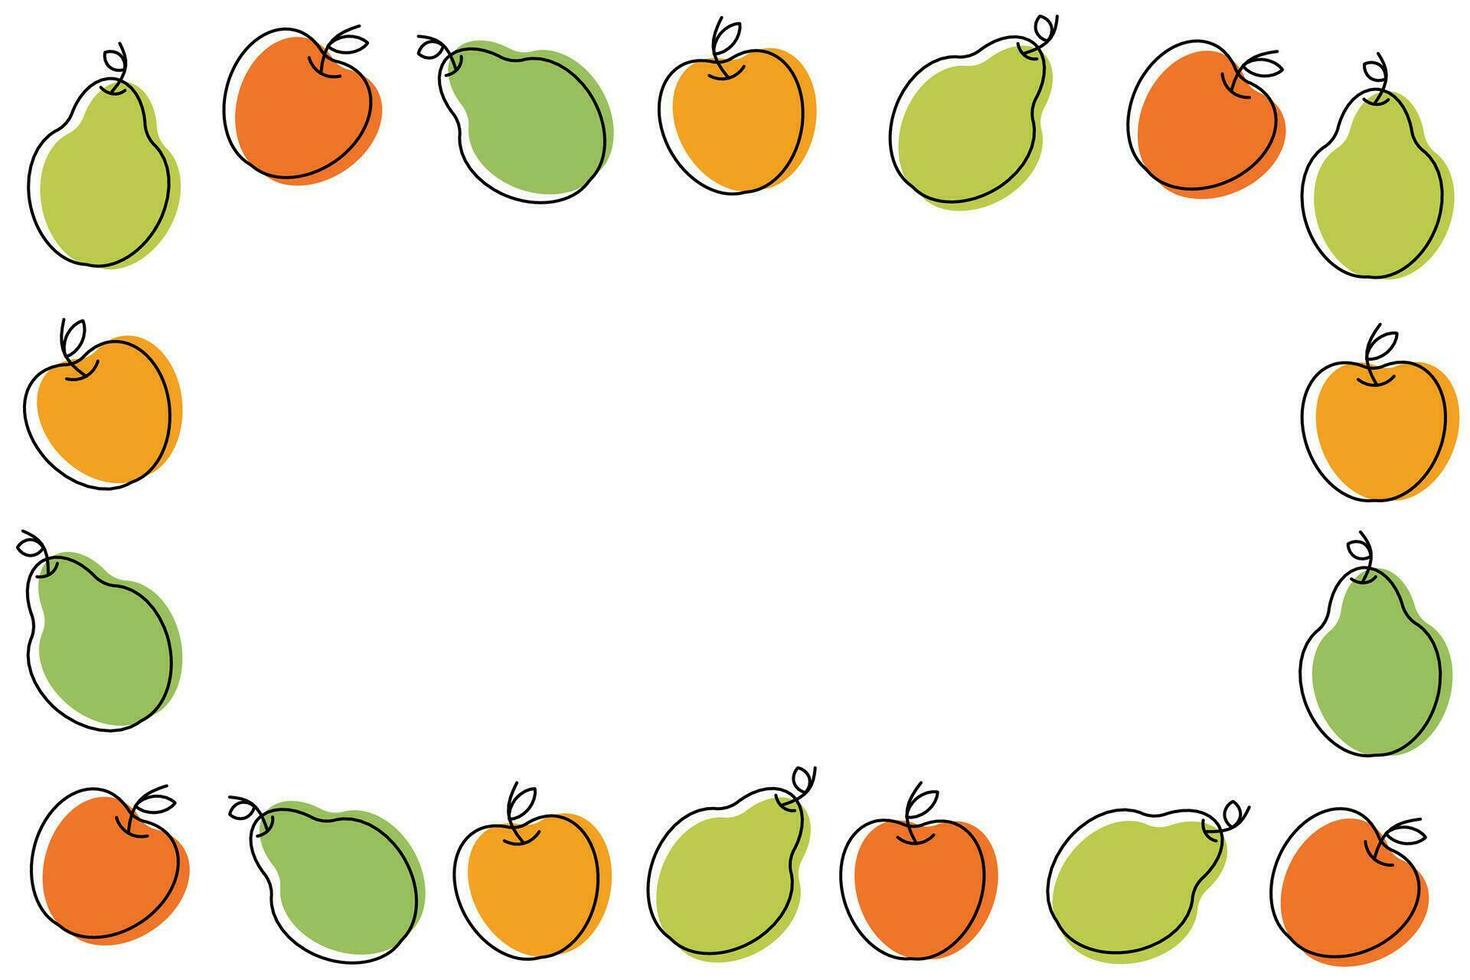 bakgrund av frukt ikoner på en vit bakgrund. äpplen och päron i linjär stil. vektor illustration. vektor illustration